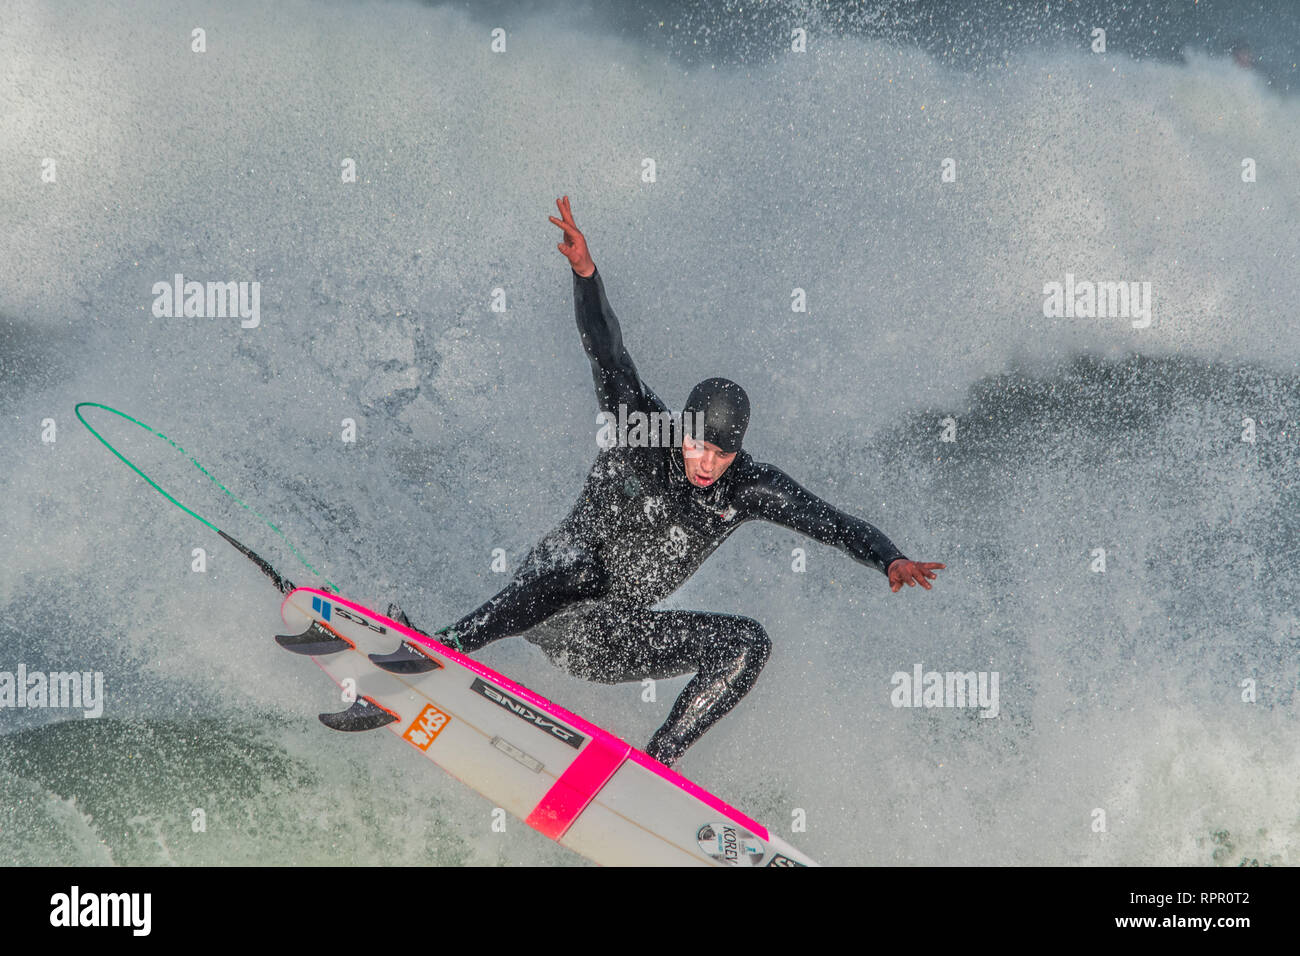 La plage de Fistral, Newquay, Cornwall, UK. 23 févr. 2019. Météo britannique. Les surfeurs ont été sortis tôt ce matin pour attraper les grosses vagues au large de la plage de Fistral. Crédit : Simon Maycock/Alamy Live News Banque D'Images